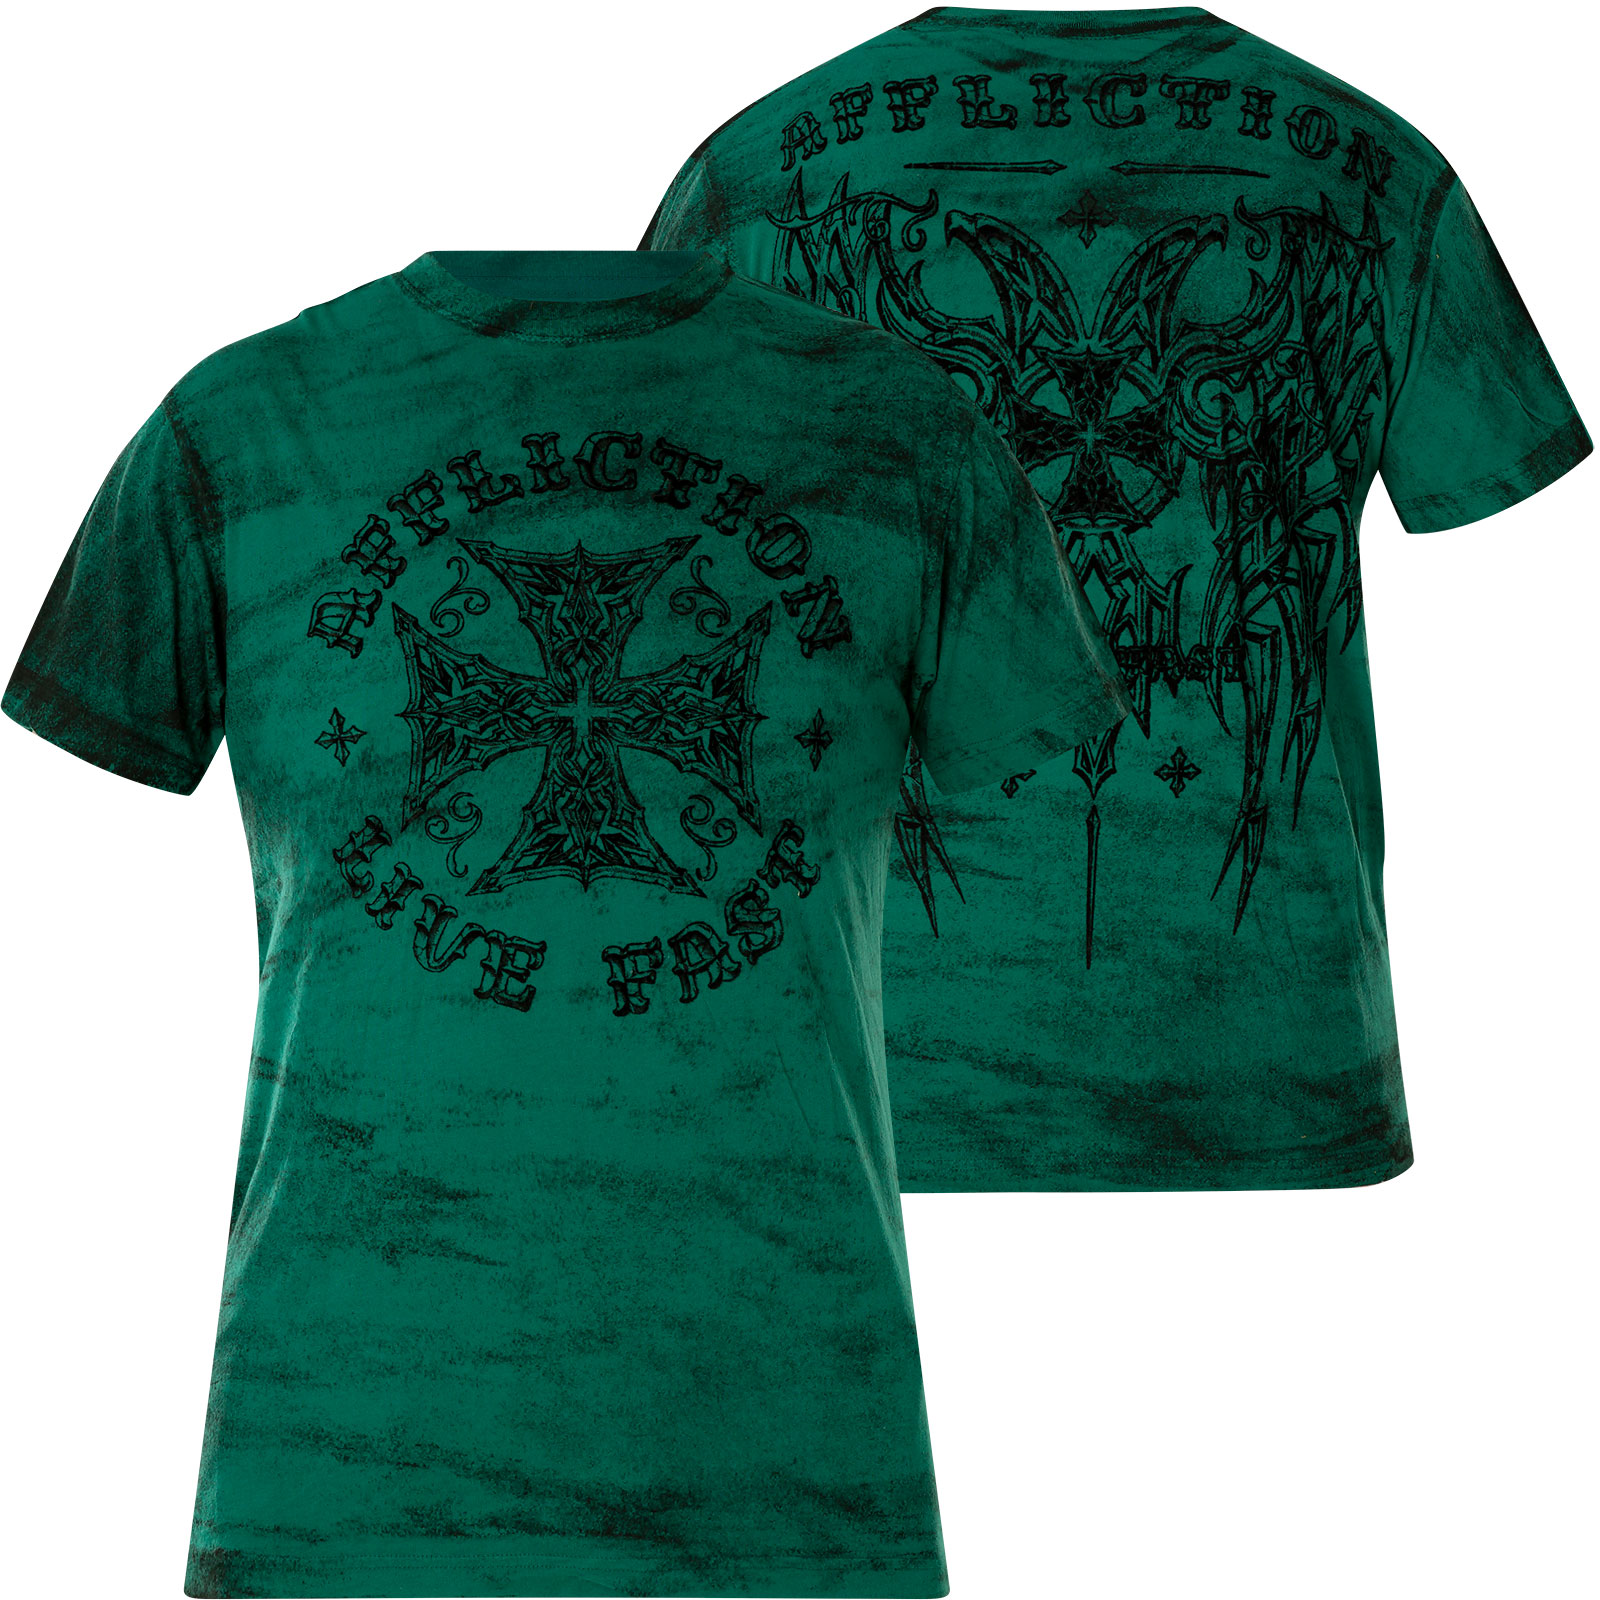 Affliction Final Battle T-Shirt Print with cross